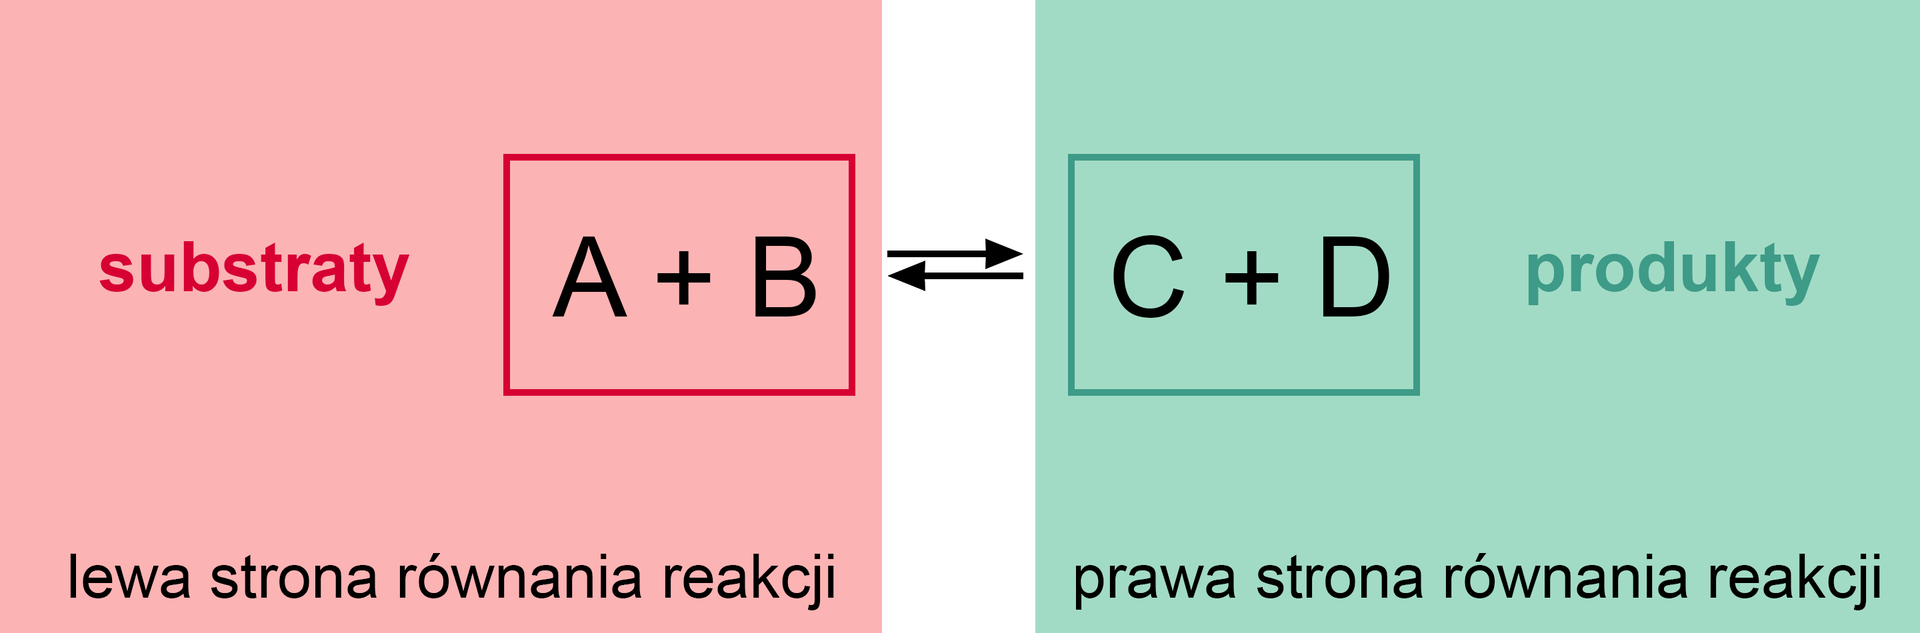 Ilustracja przedstawiająca równowagę reakcji chemicznej. Po lewej stronie równania znajdują się substraty wielka litera  A oraz wielka litera B, po prawej stronie produkty wielka litera C oraz wielka litera D. Pomiędzy substratami a produktami znajdują się dwie strzałki, pierwsza skierowana w  prawo i druga, pod pierwszą, skierowana w lewo, co stanowi o równowadze reakcji.